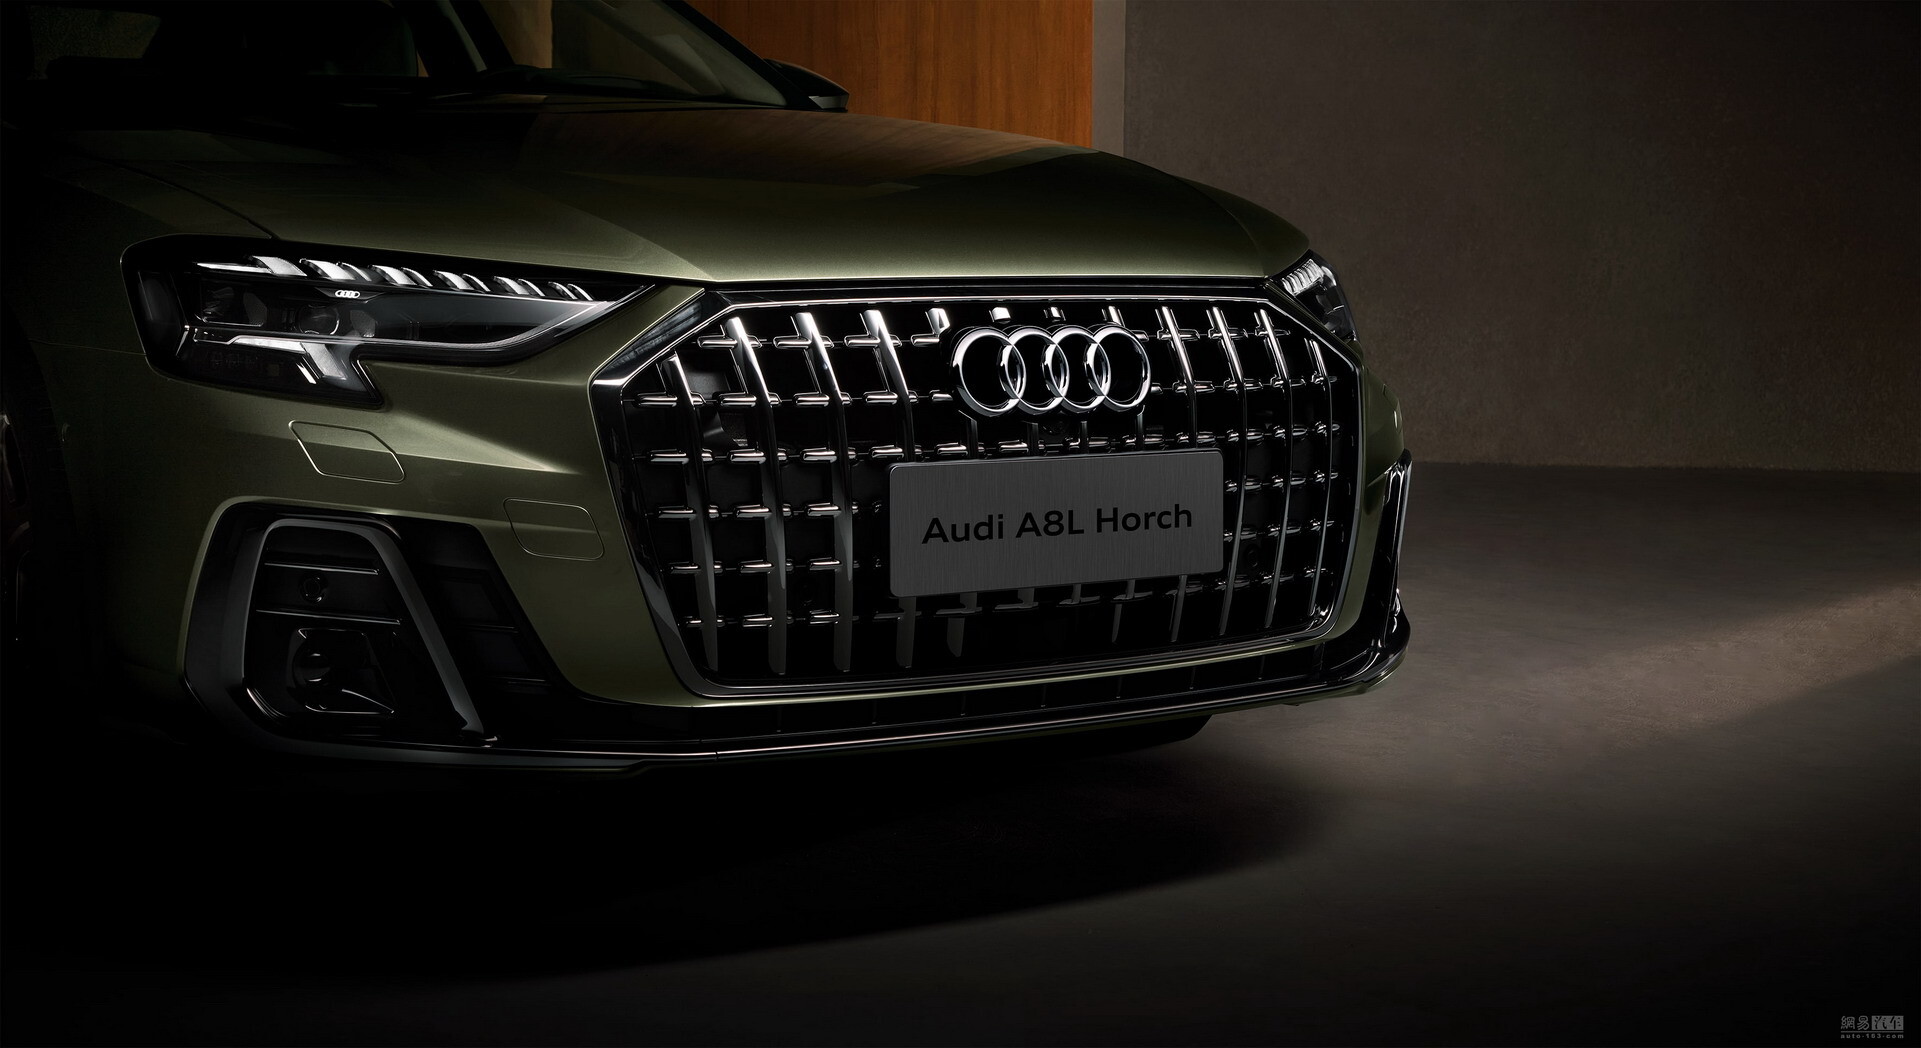 Обновлённая Audi A8 дебютировала в удлинённой версии Horch